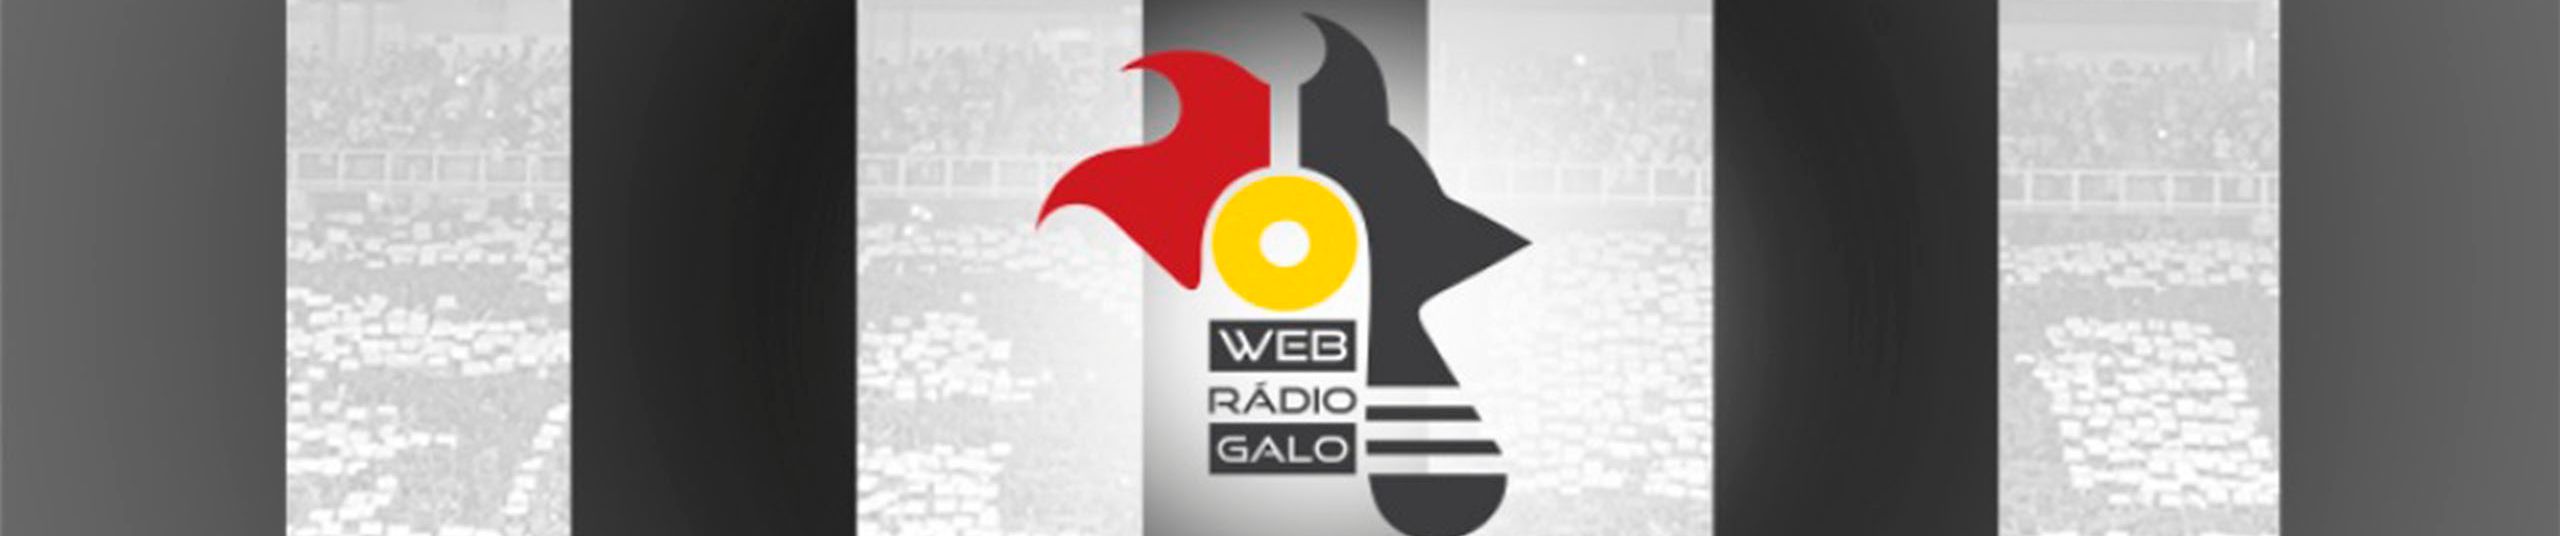 Web Rádio Galo 